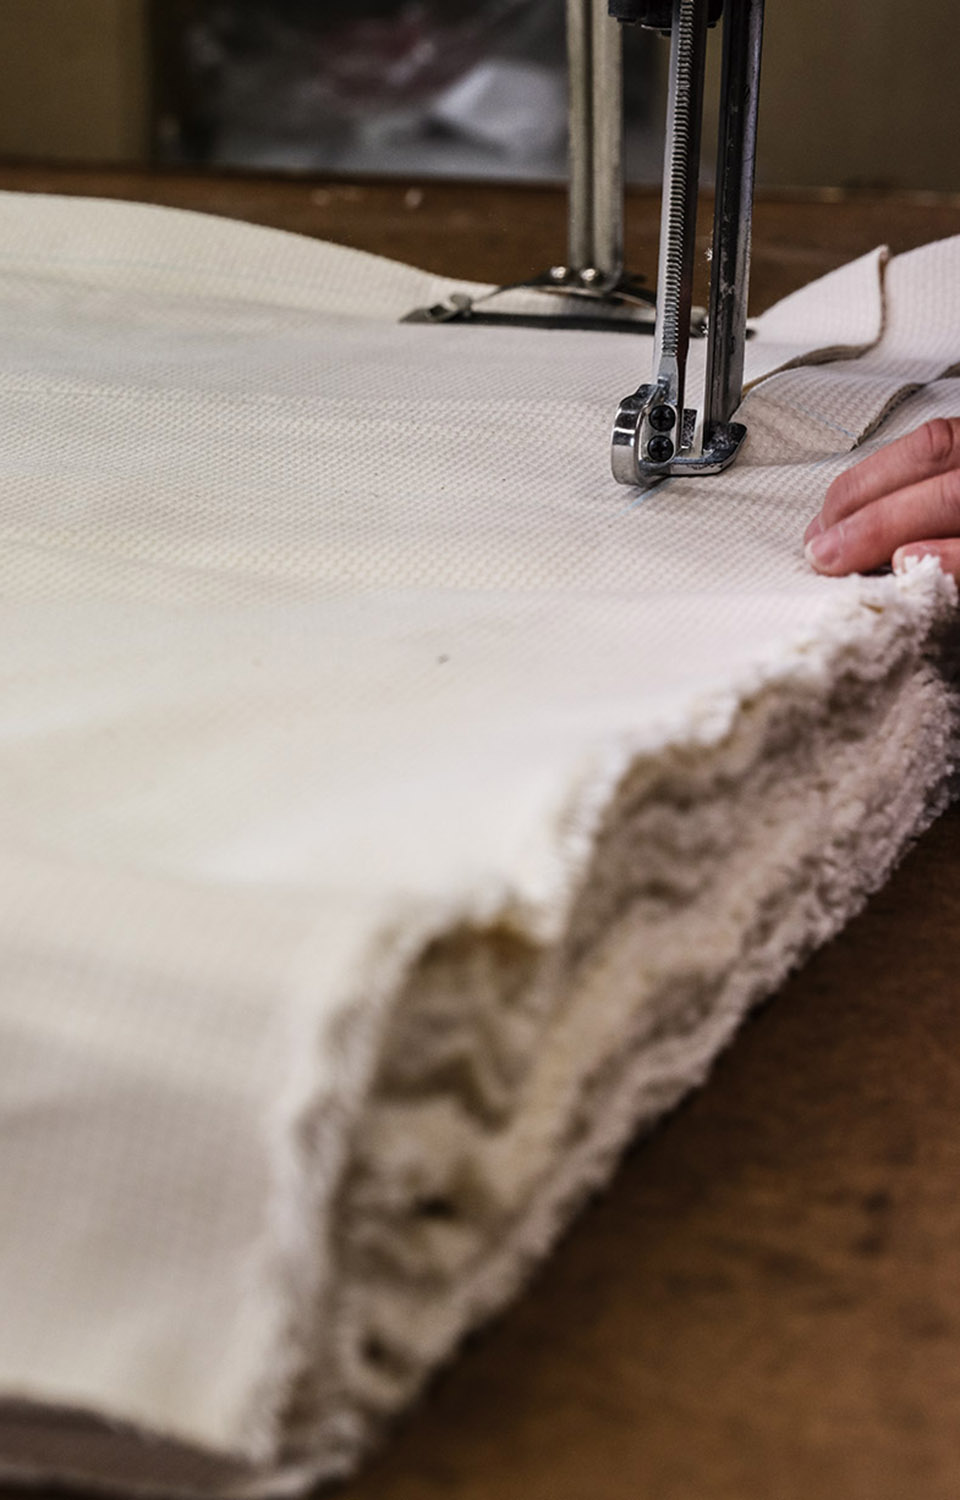   三河木綿刺し子織りの生地は、ぷっくりとした凹凸が特徴で、耐久性・耐火性・保湿性・吸湿性に優れた丈夫な生地です。